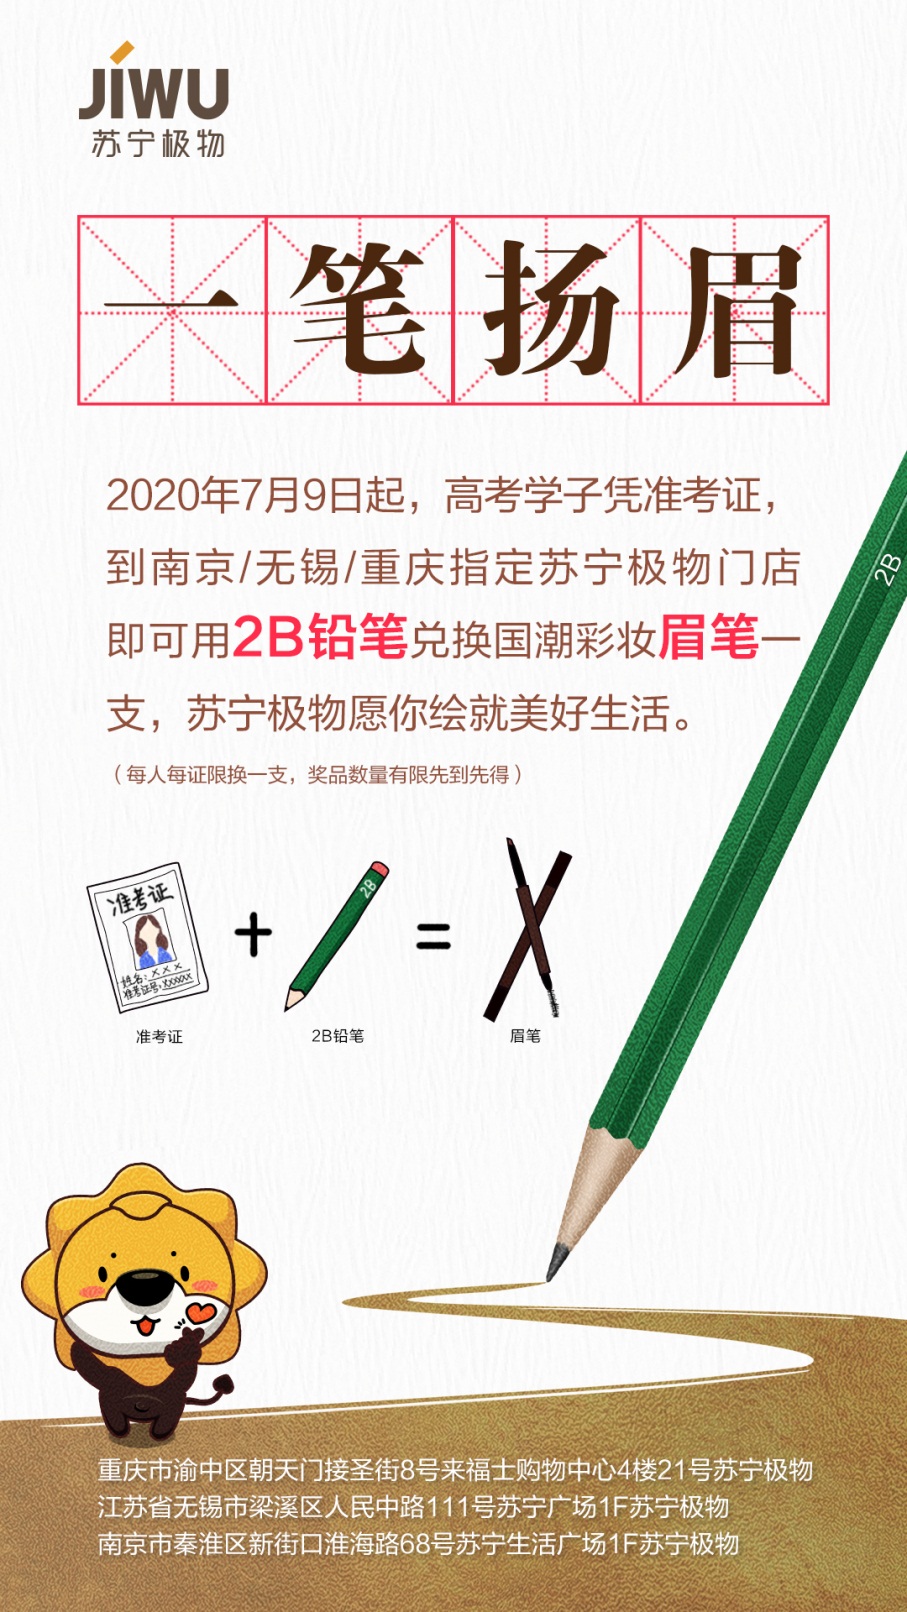 苏宁极物推出2B铅笔换眉笔活动，考生可凭准考证参与